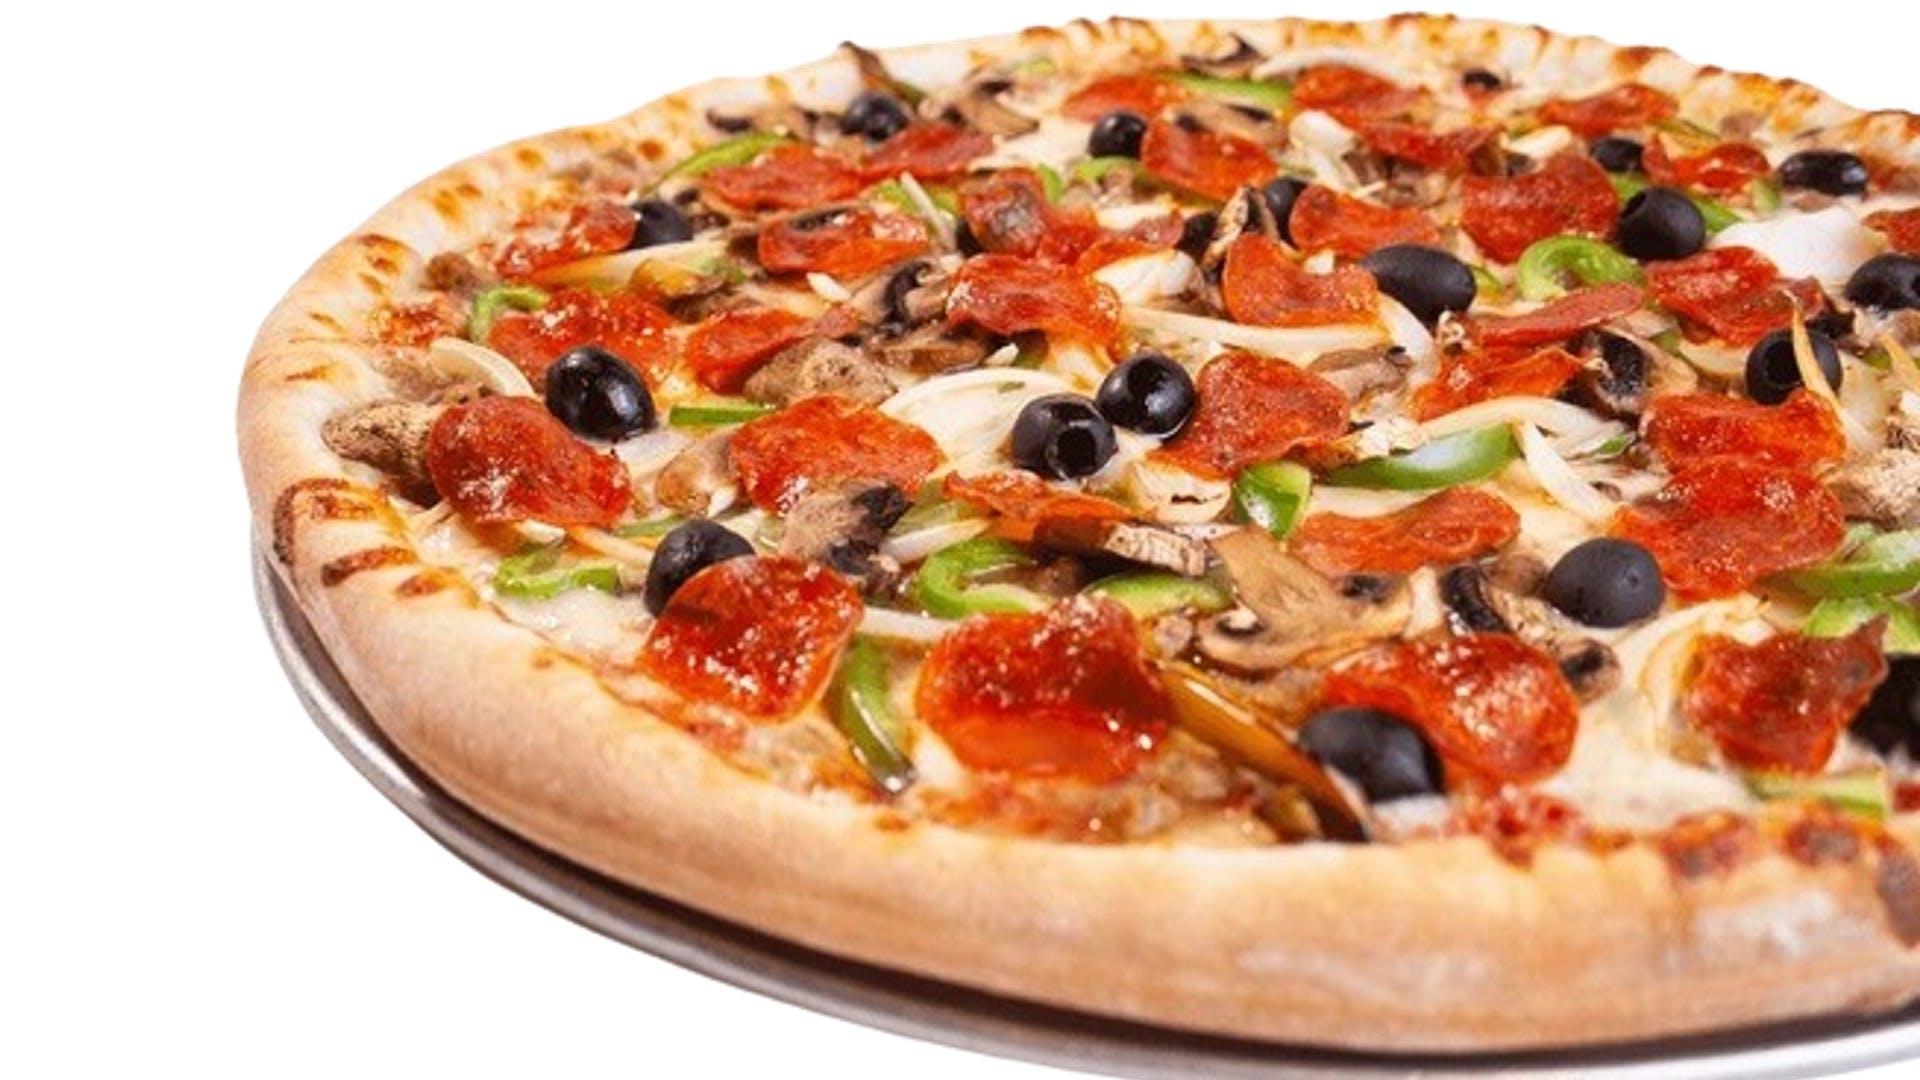 Albany Pizza & Pastas hero